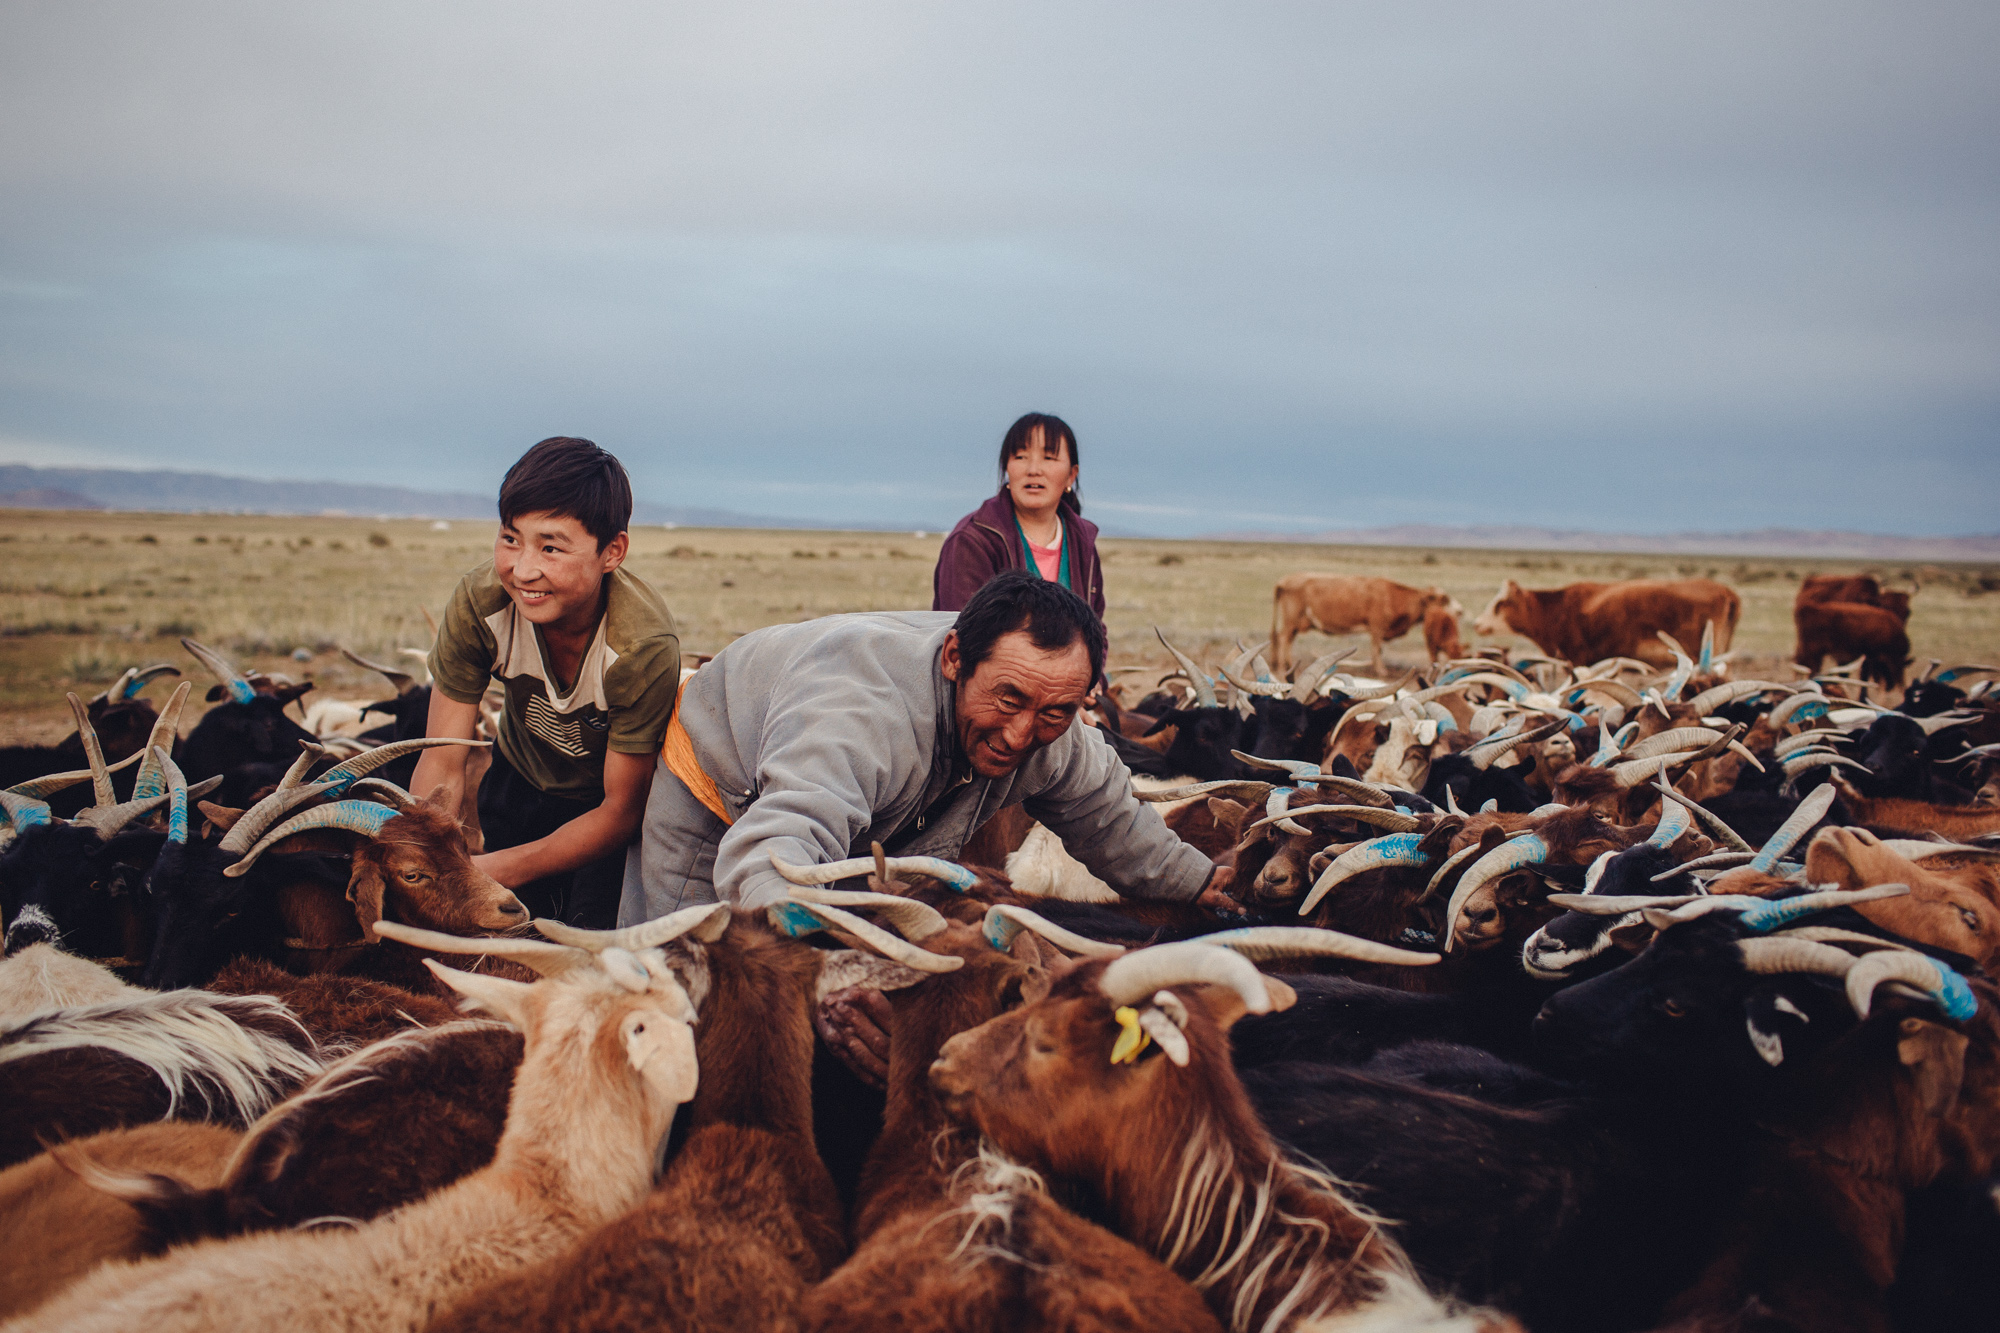 В Монголии развито животноводство. В 2016 году поголовье крупного рогатого скота составило 4 млн голов (0,7 млн в России), овец и коз &mdash; 53,4 млн голов (1,5 млн в России), 3,6 млн лошадей (0,3 млн в России).

При этом из всех зарегистрированных в 2016 году в Монголии преступлений на кражу скота пришлось 3% (более 800 преступлений). Этот показатель сократился за год почти на 32%.
